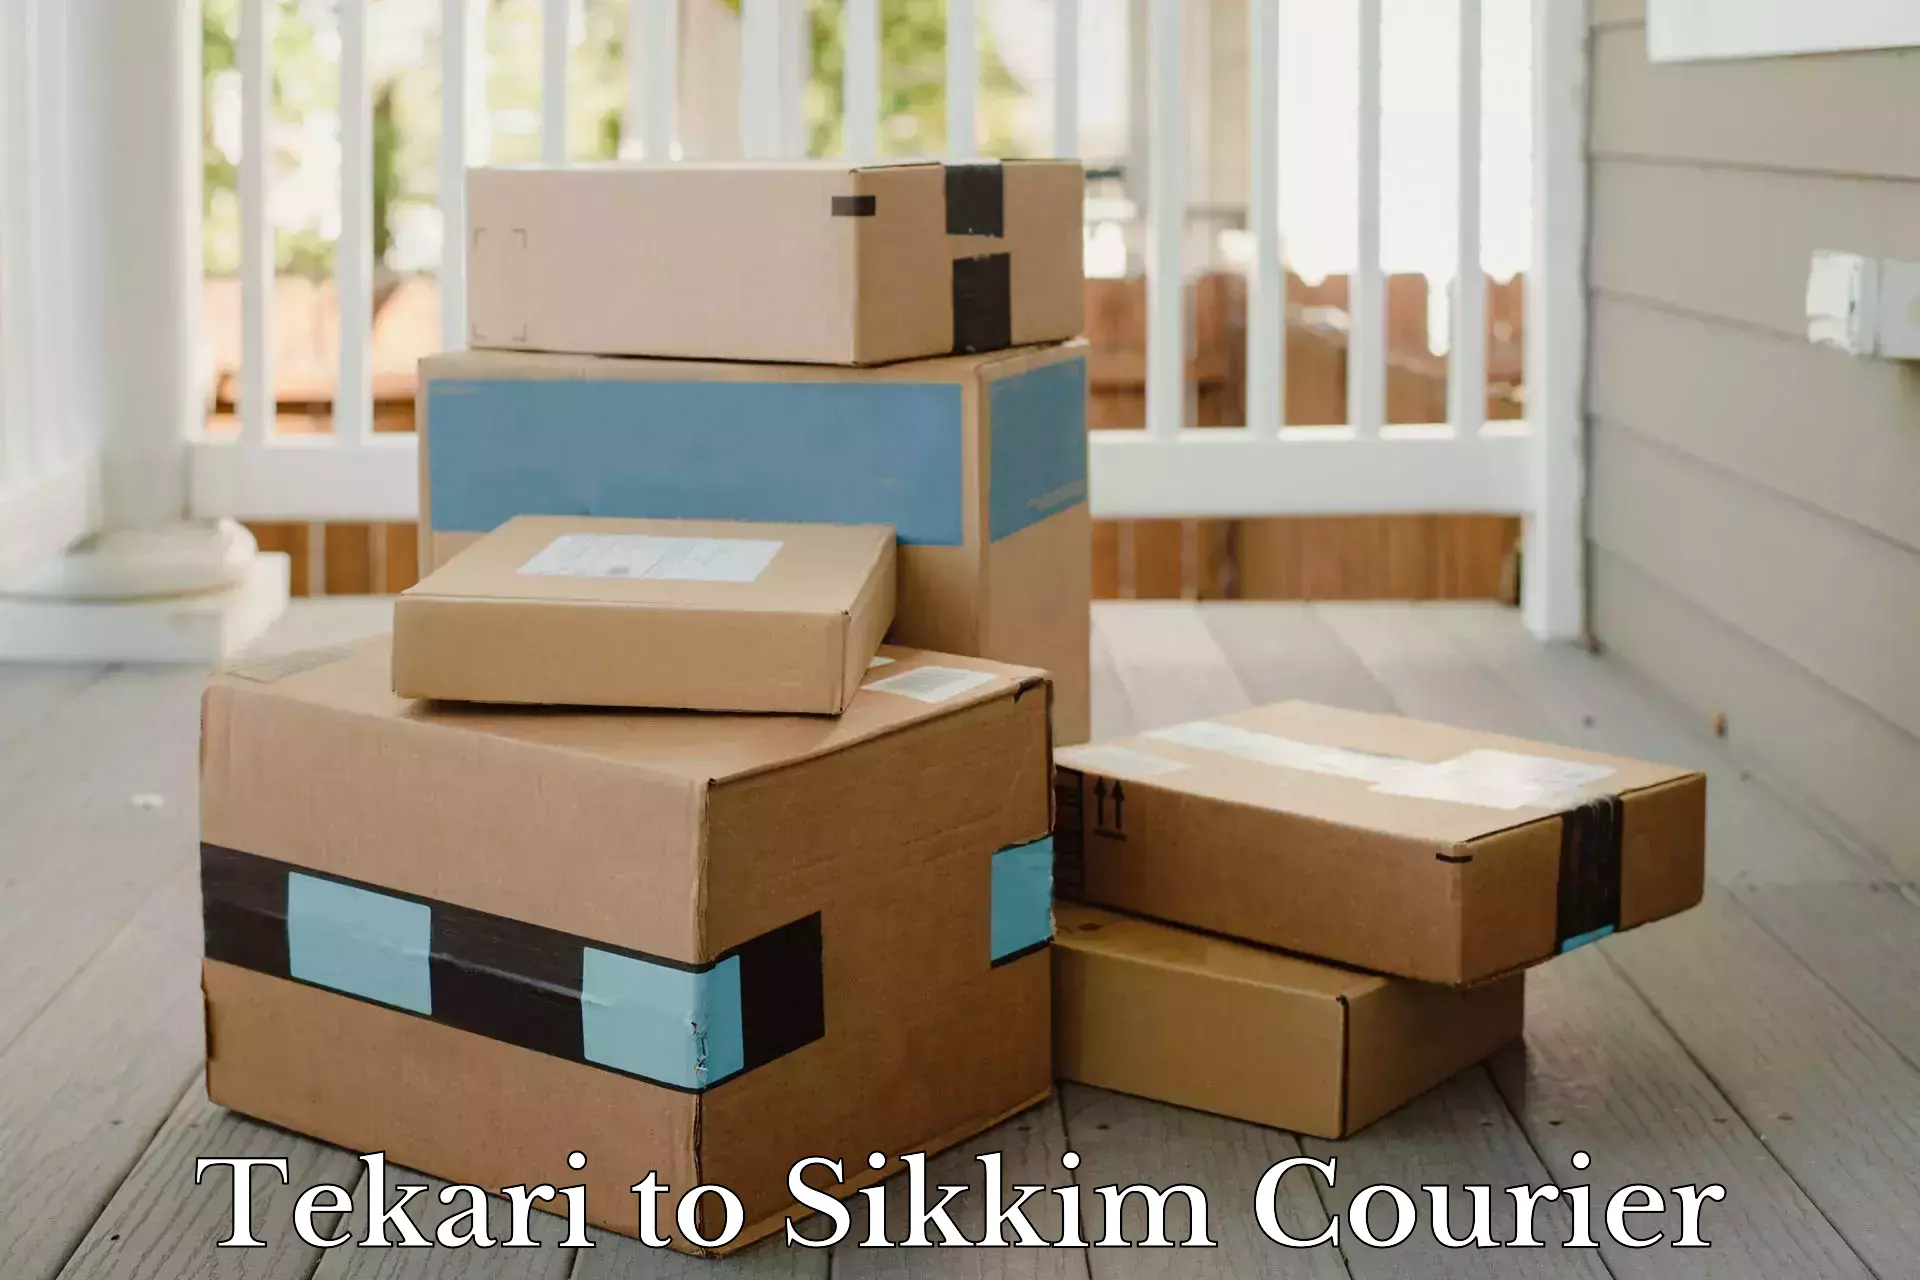 Reliable logistics providers Tekari to Sikkim